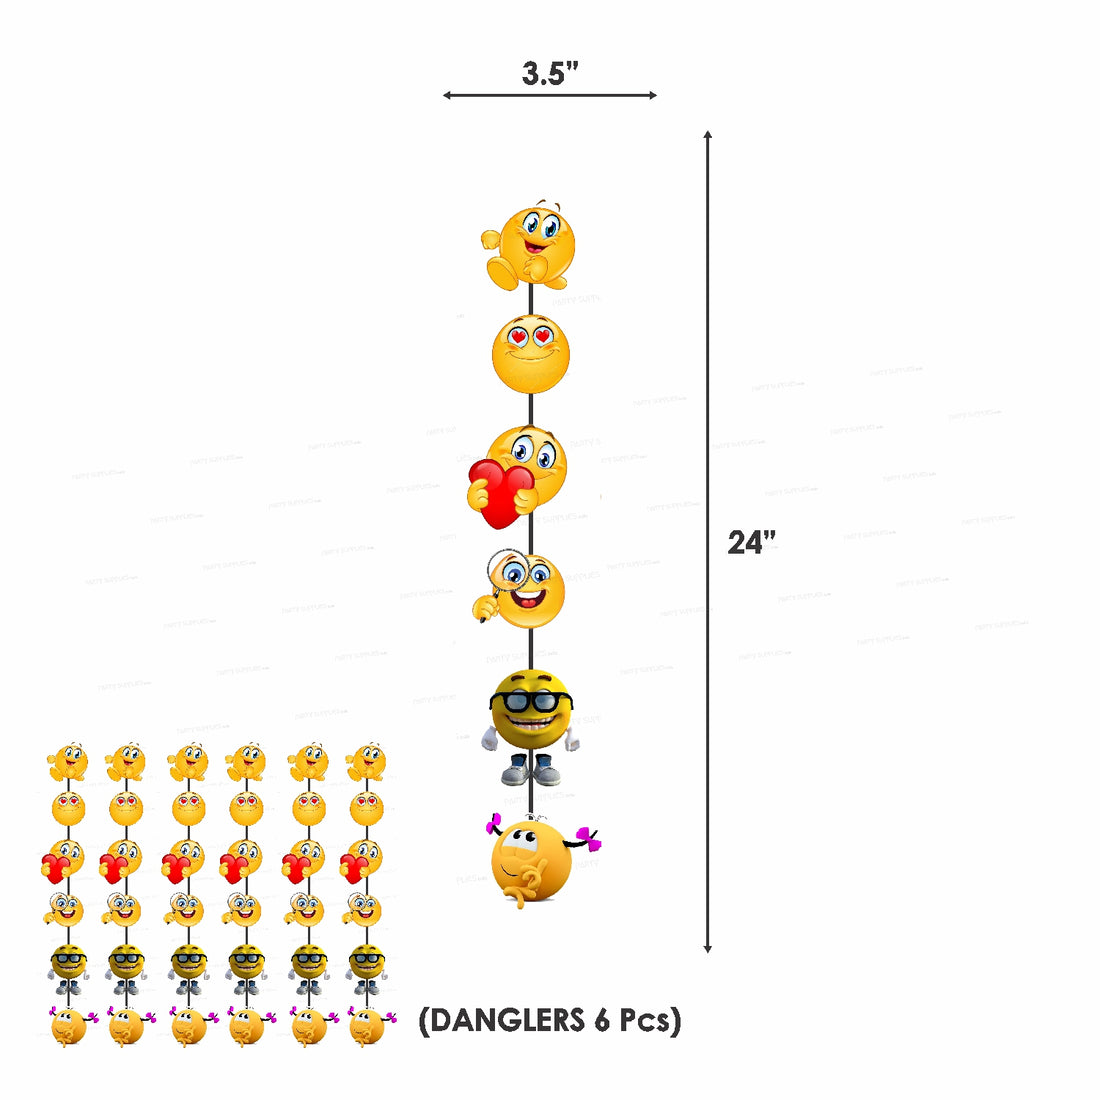 PSI Emoji  Theme Classic  Combo Kit